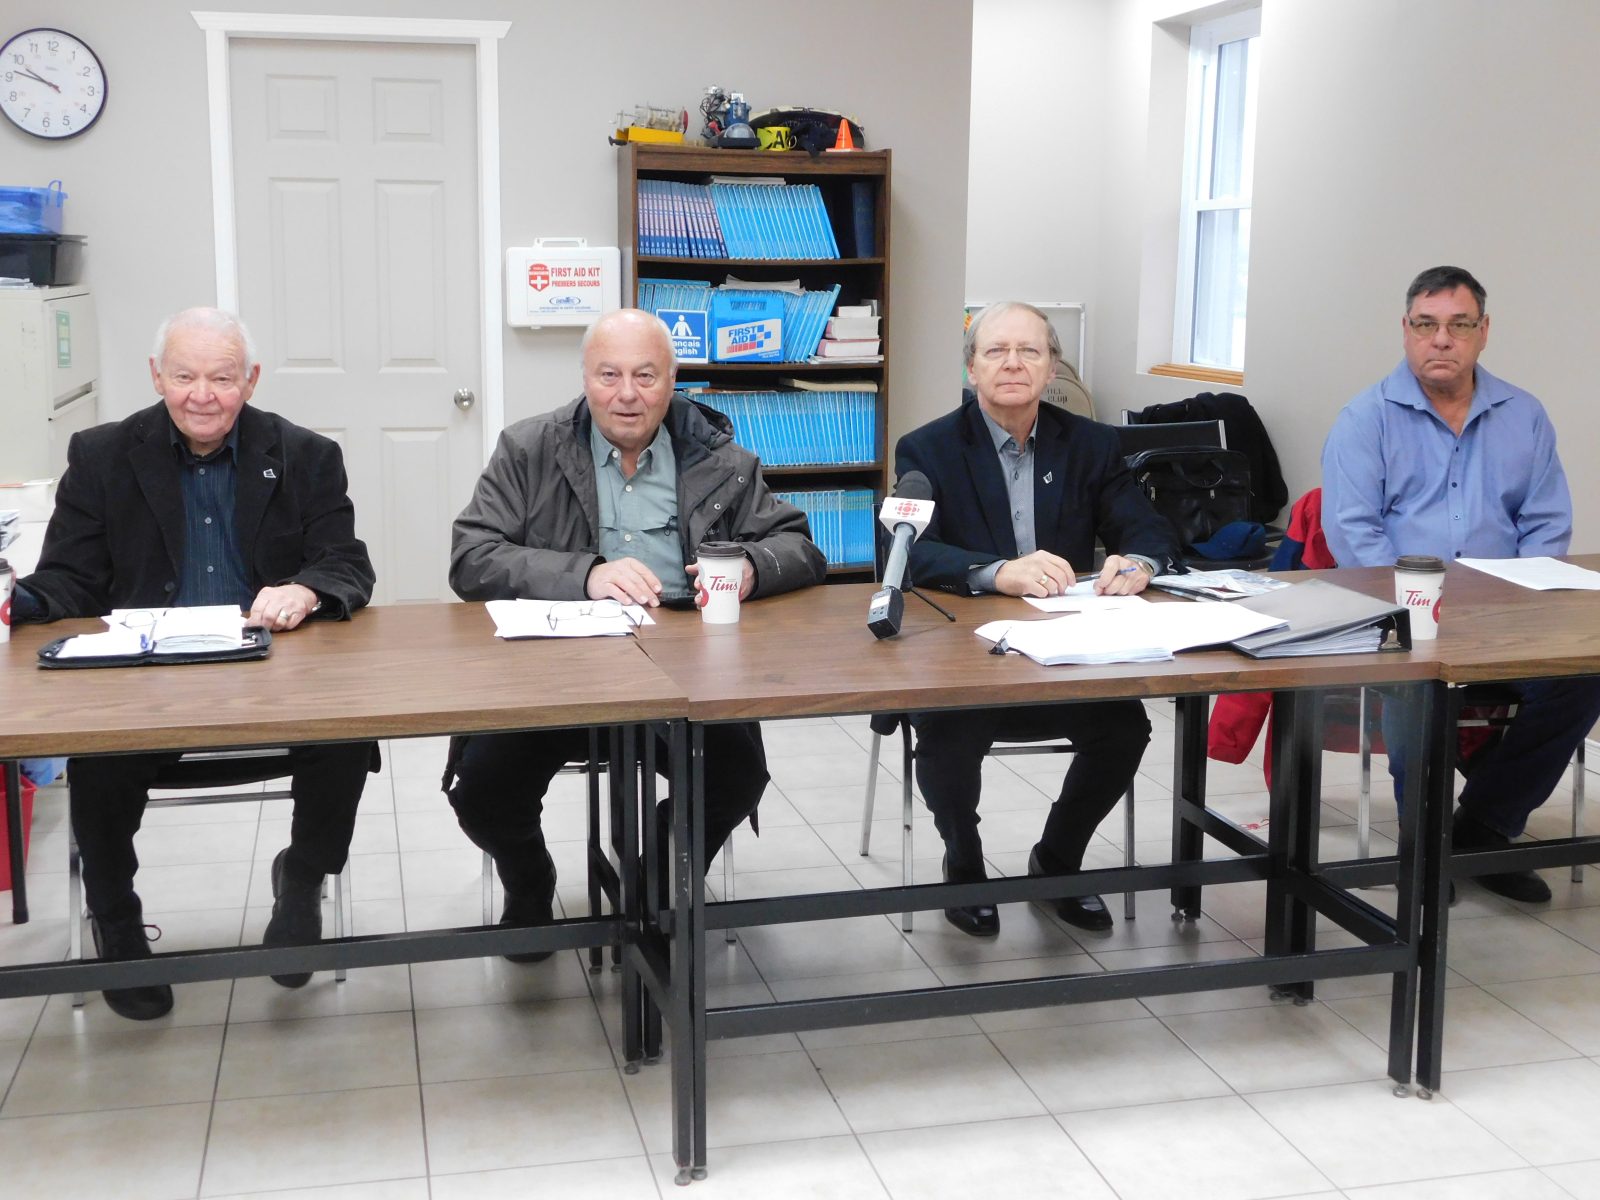 Council quartet speaks out about Mayor Assaly’s comments